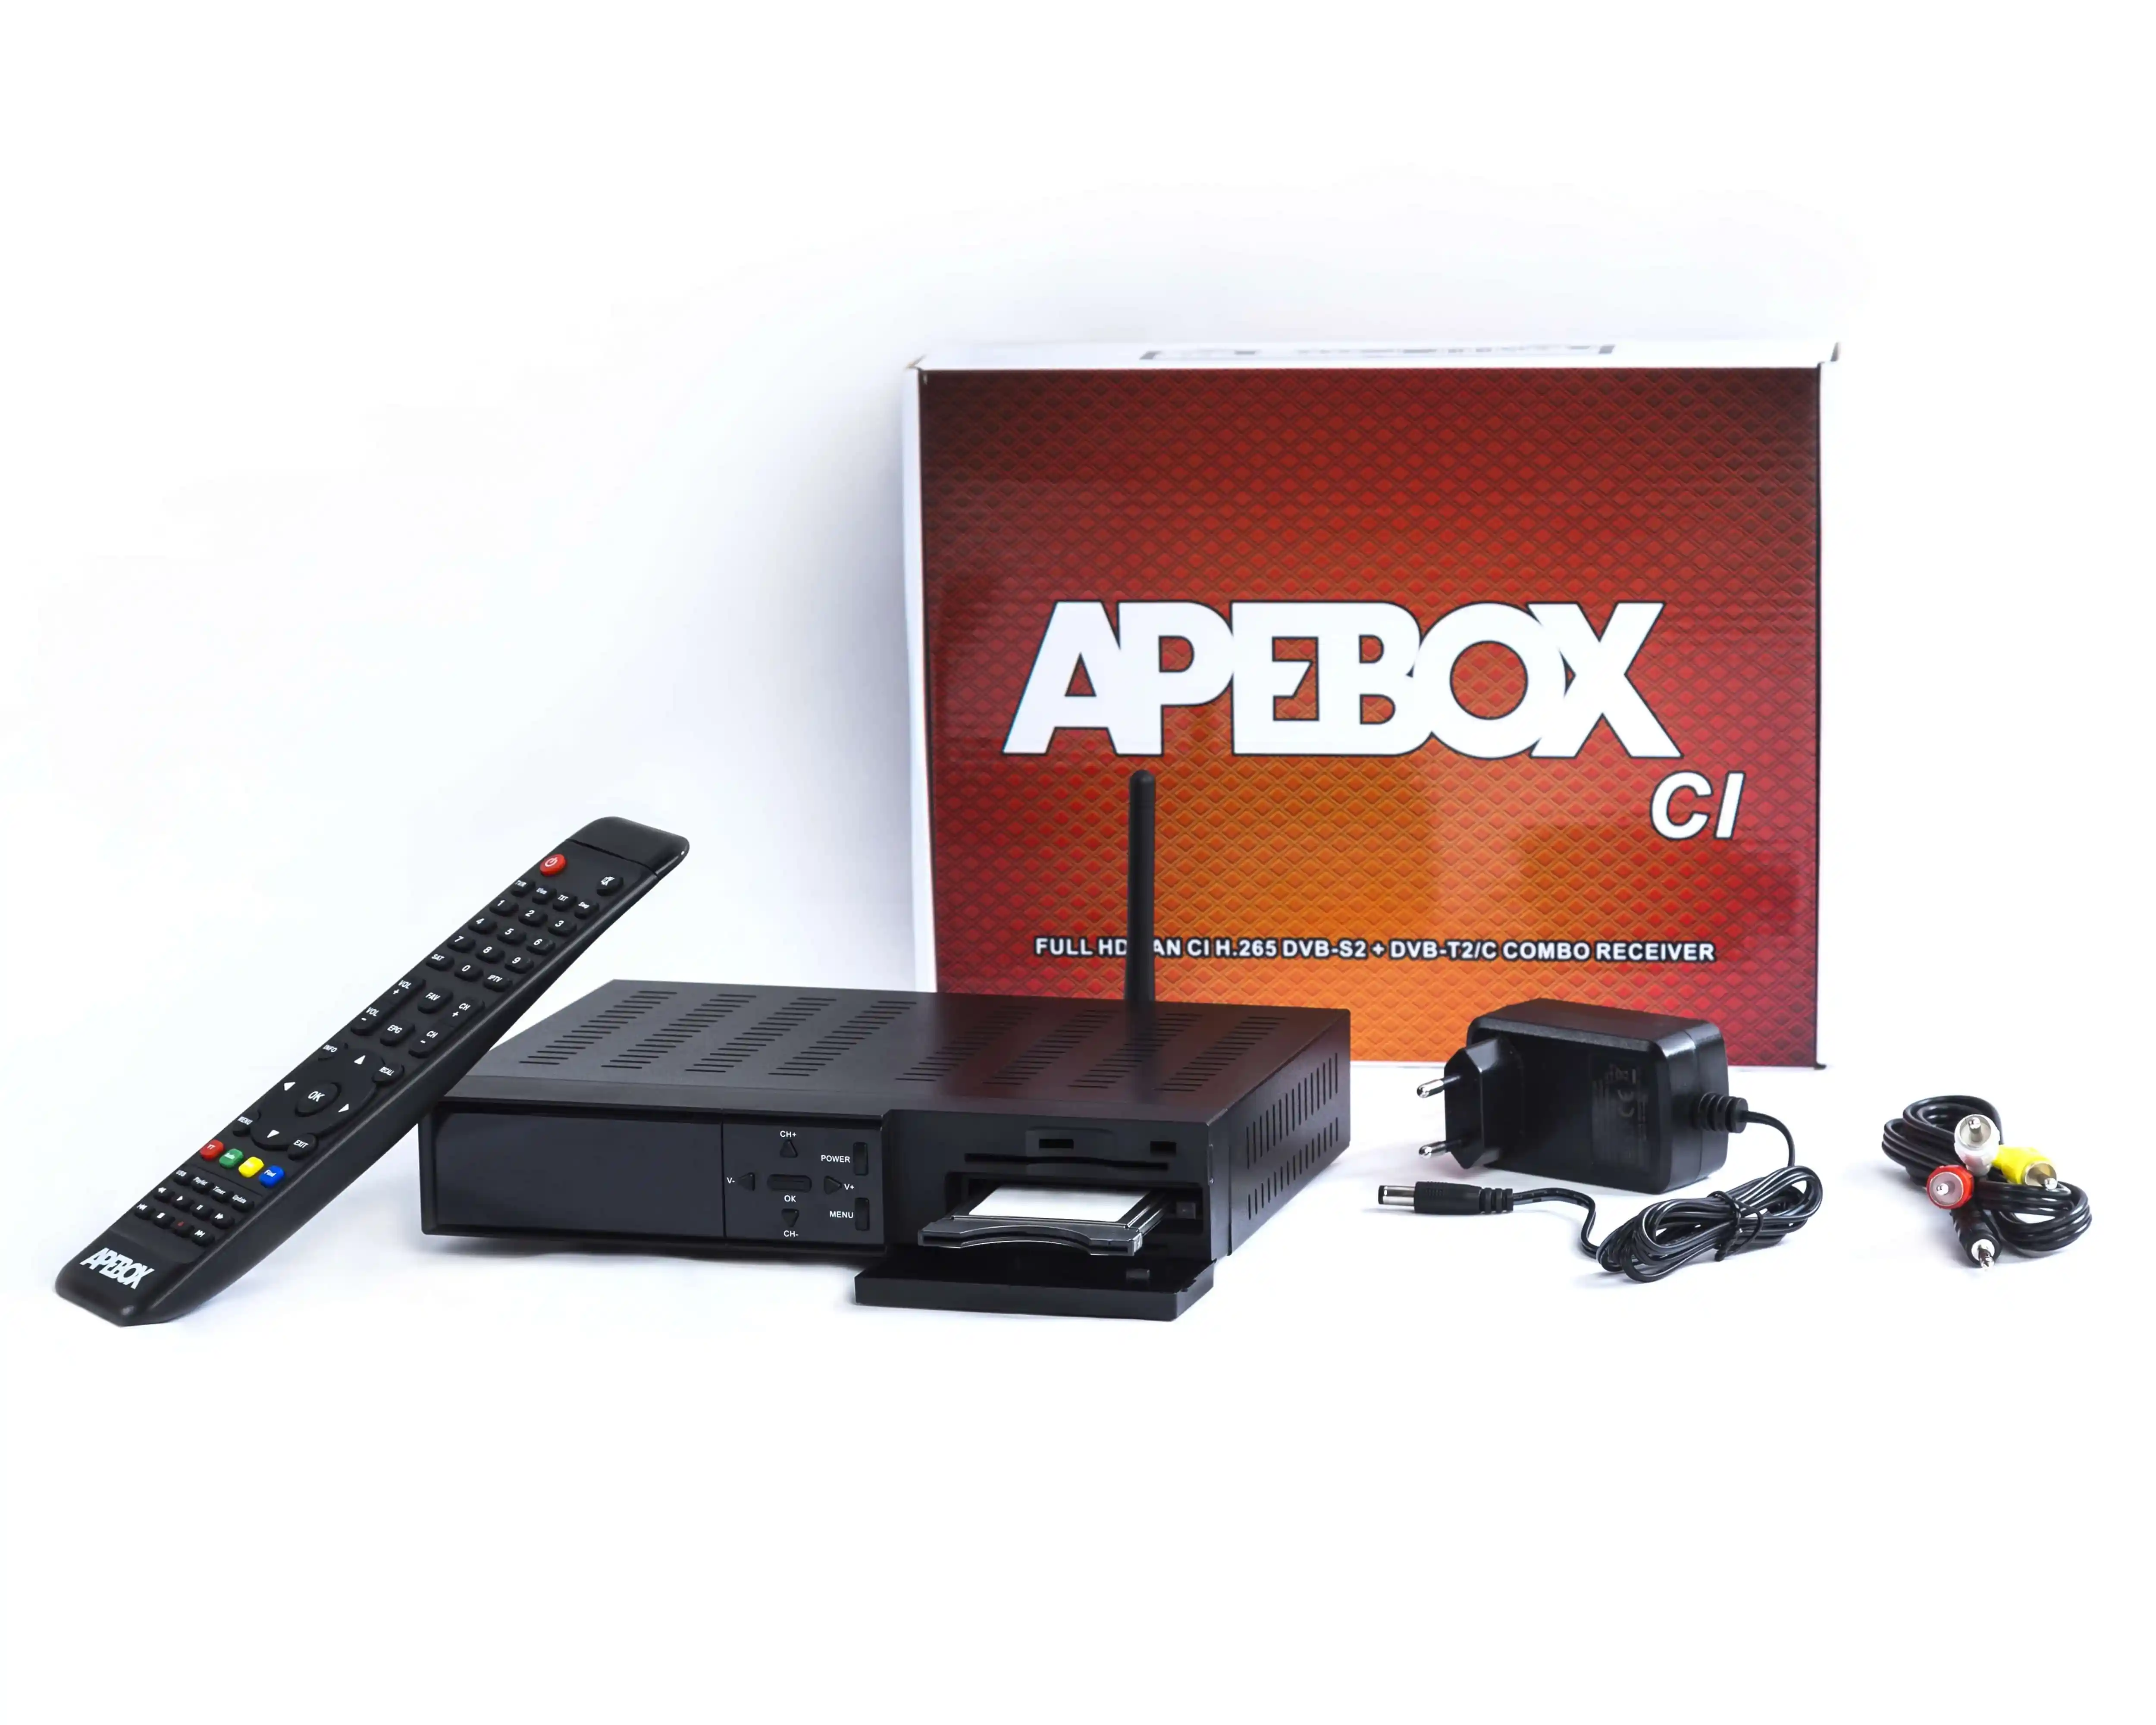 Apebox CI TV Boks - her vist med ekstraudstyr - WiFi